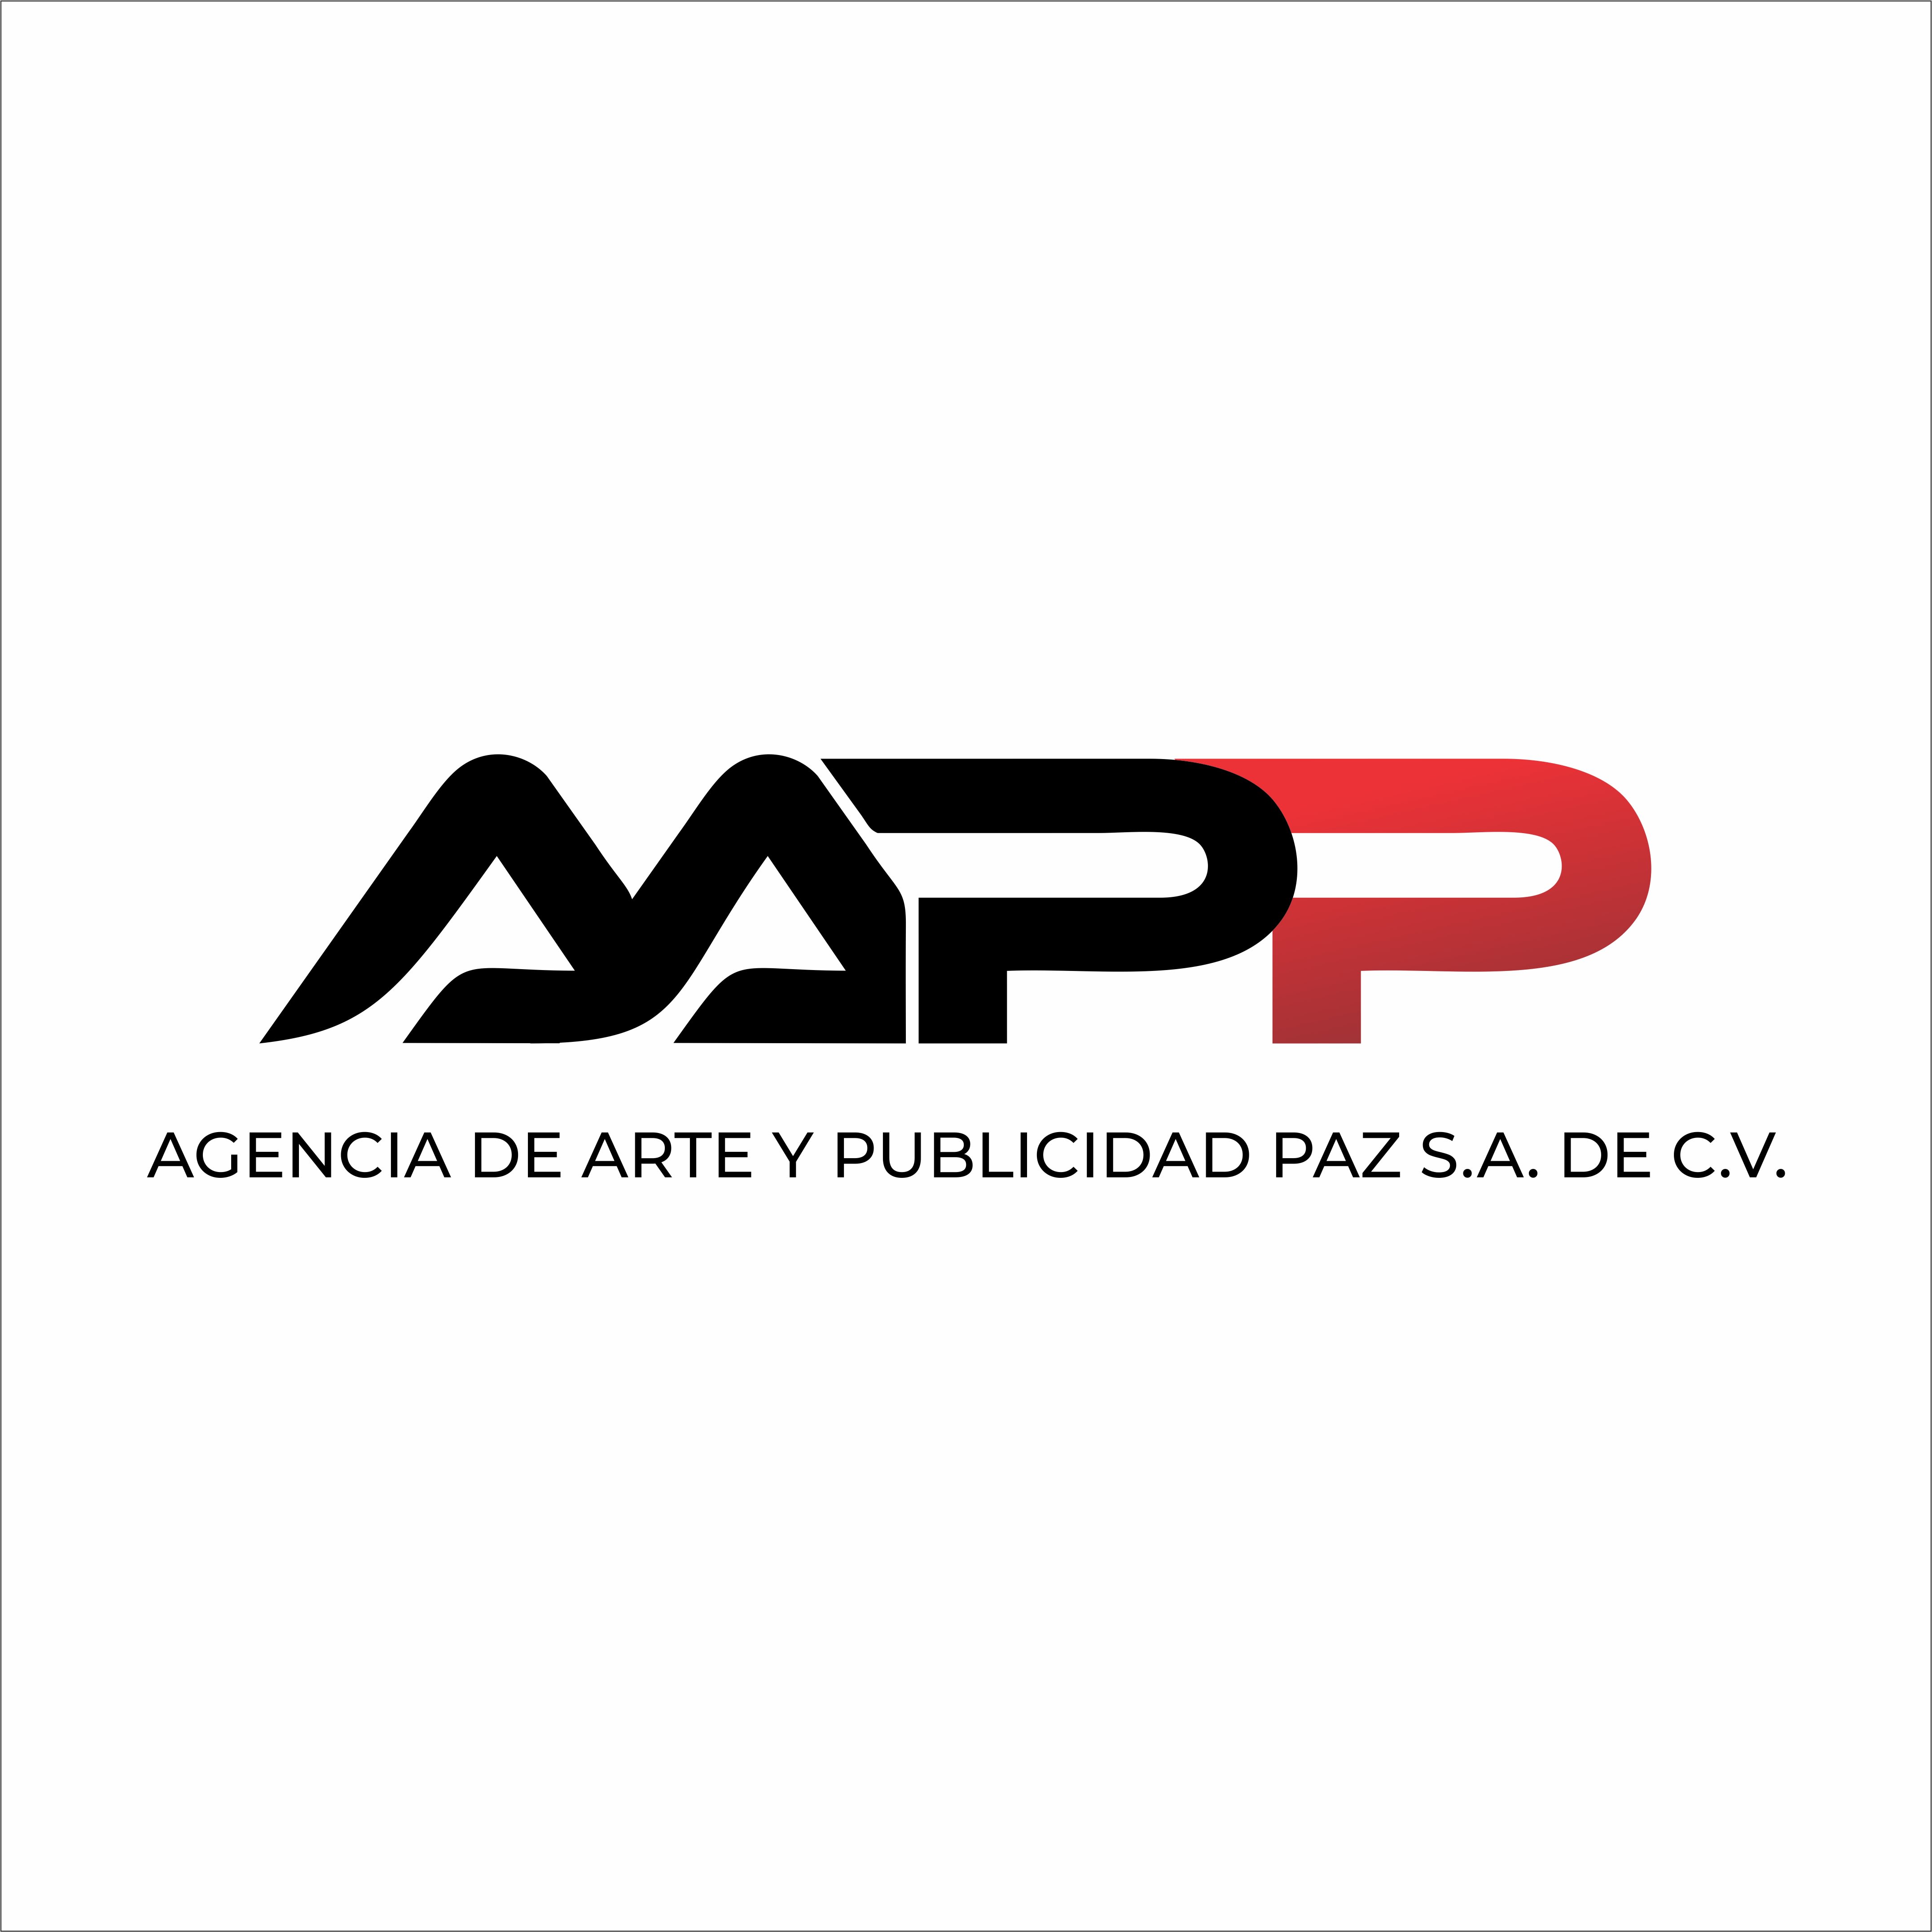 AGENCIA DE ARTE Y PUBLICIDAD  PAZ, S.A DE C.V.